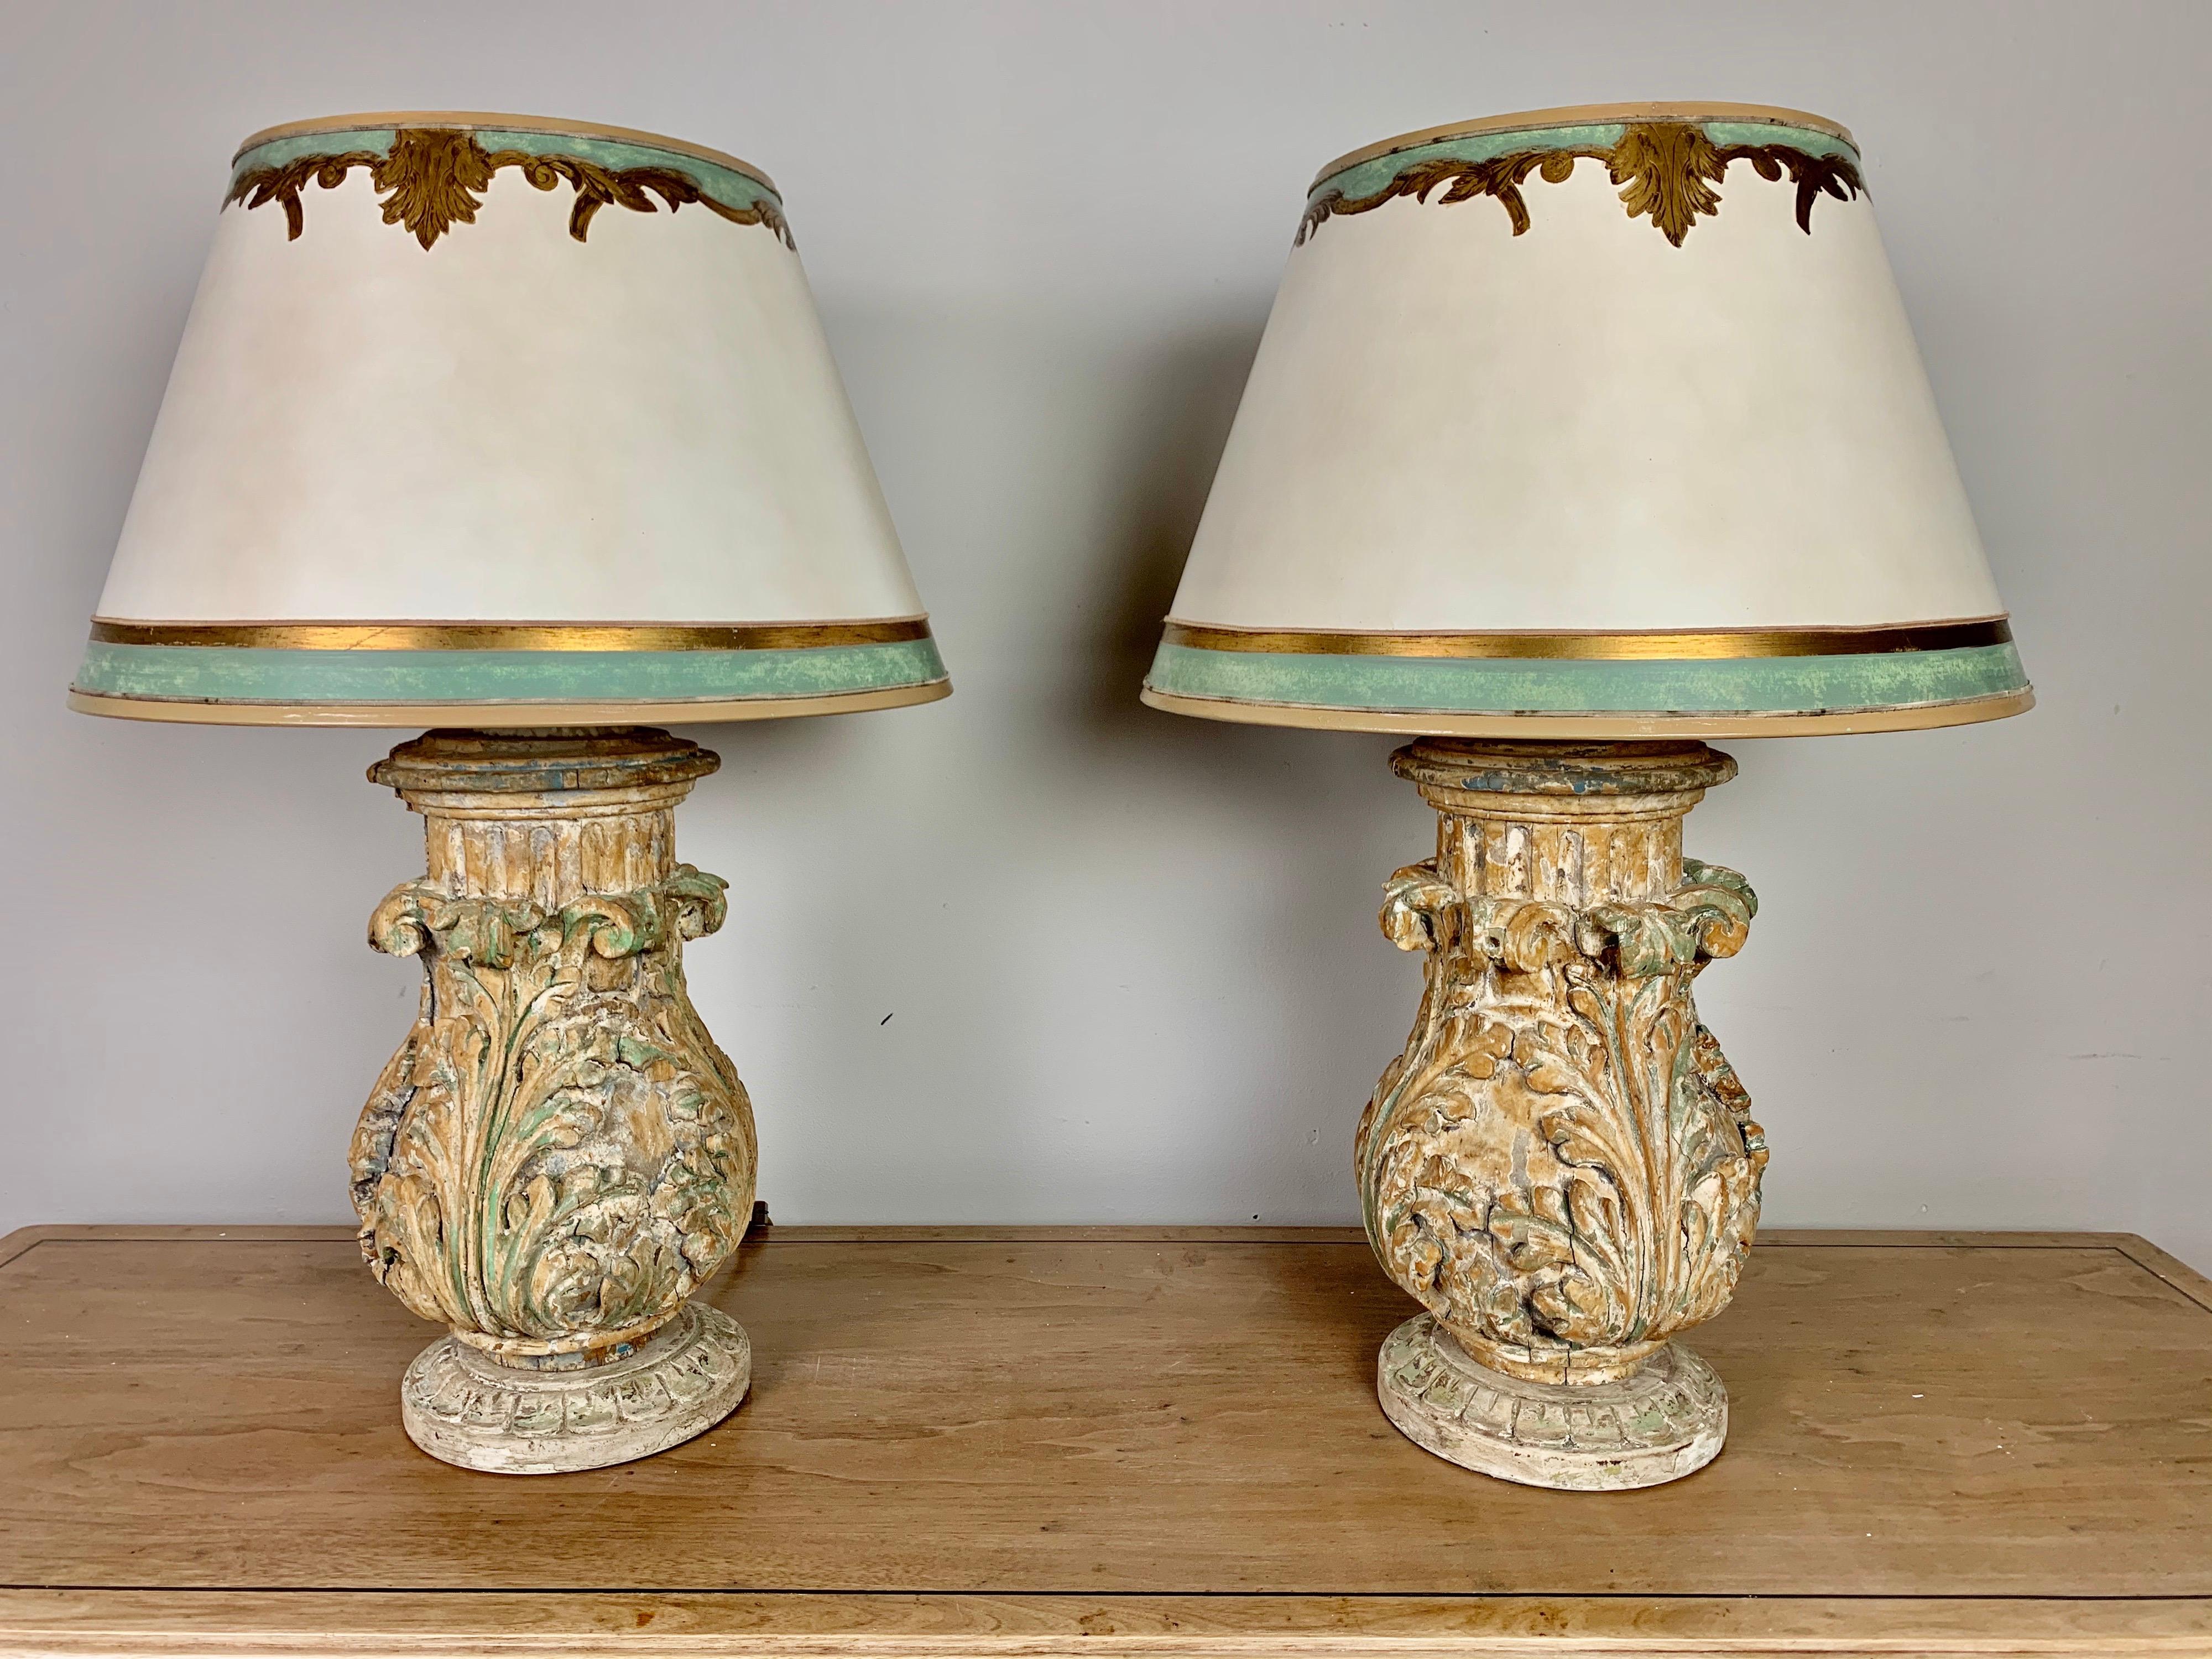 Zwei maßgeschneiderte Lampen mit handgeschnitzten Akanthusblättern aus dem 19. Jahrhundert, die in die Lampen montiert wurden. Die Lampen werden von handbemalten Pergamentschirmen gekrönt, die perfekt zueinander passen. Die Lampen sind neu verkabelt